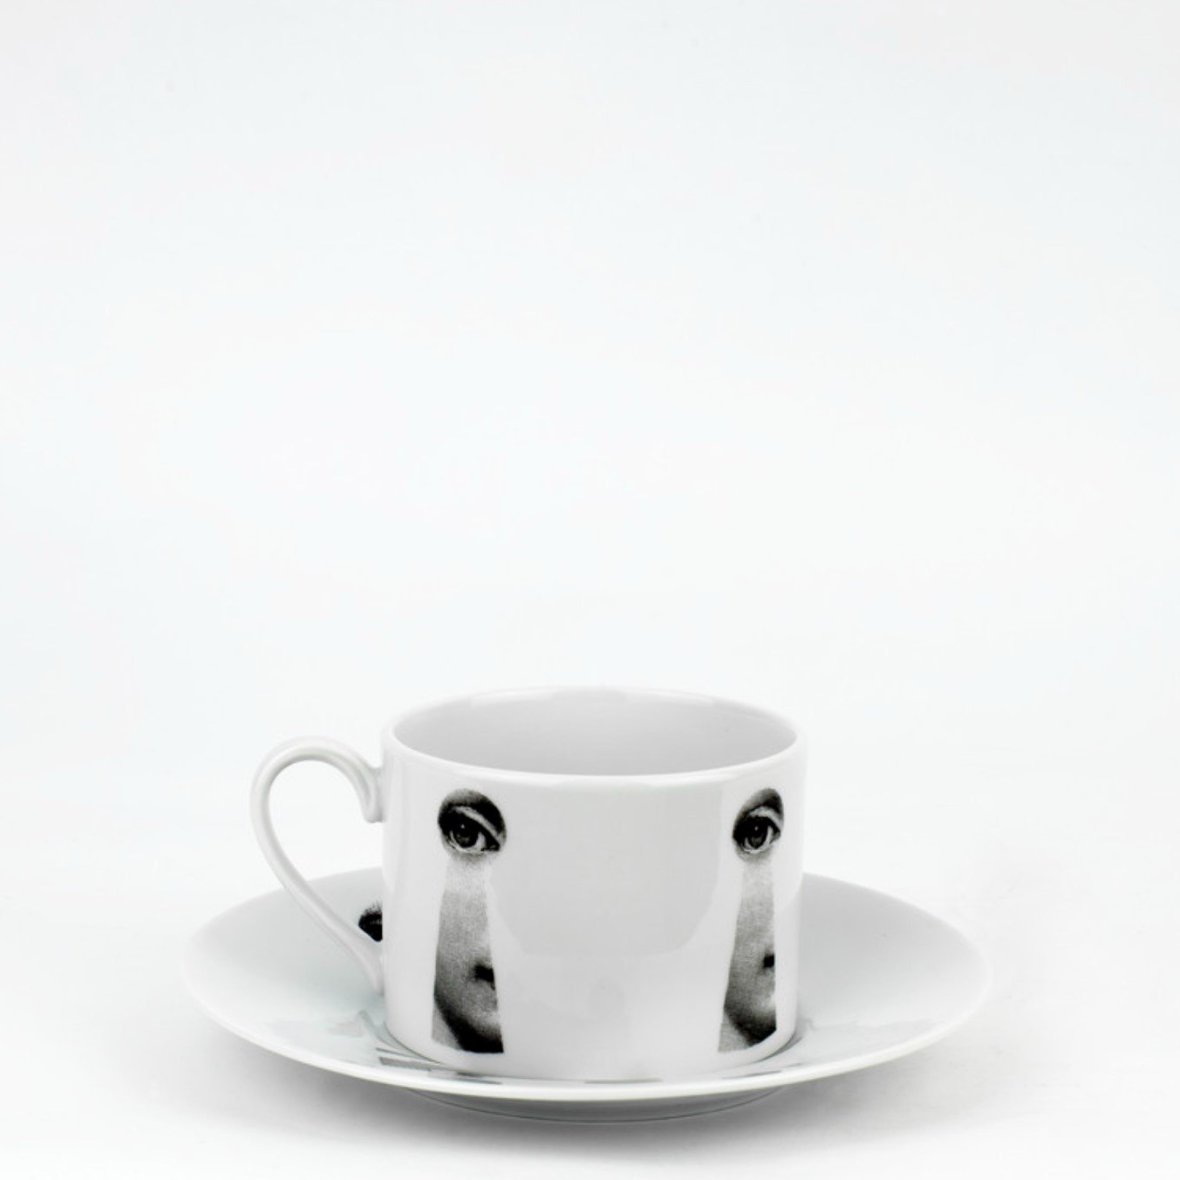 tea-cup-tema-e-variazioni-2005-serratura-black-white-1